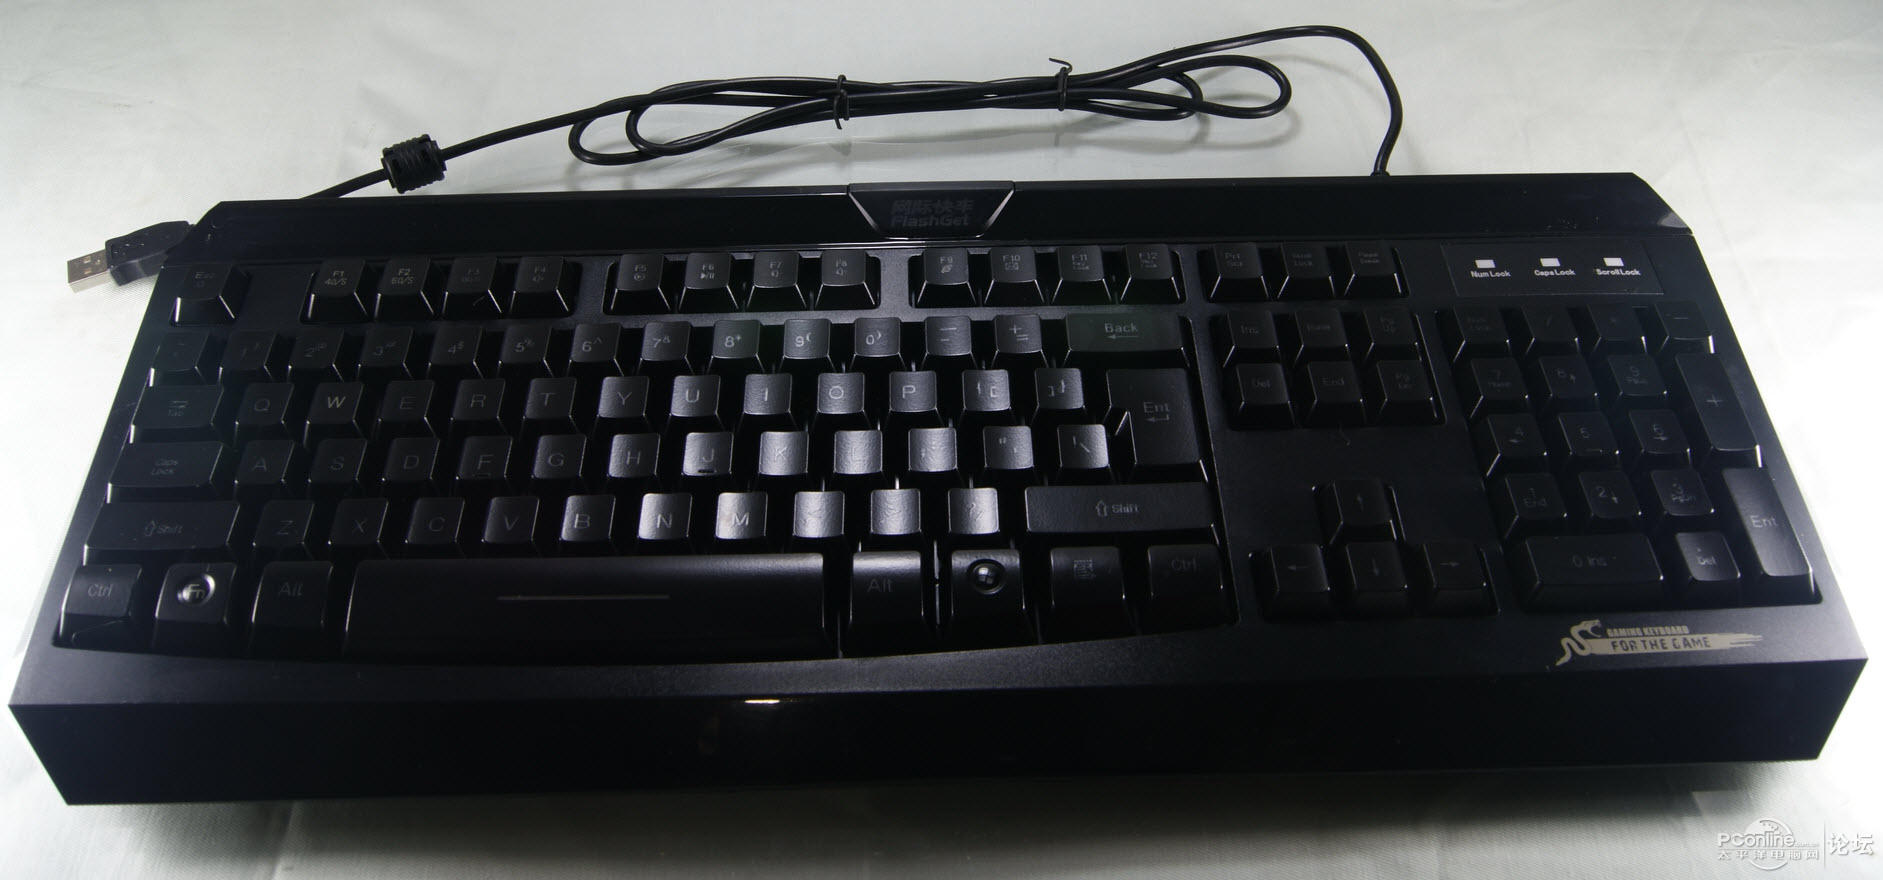 大键盘也带Fn,入门级的背光竞技键盘使用感受